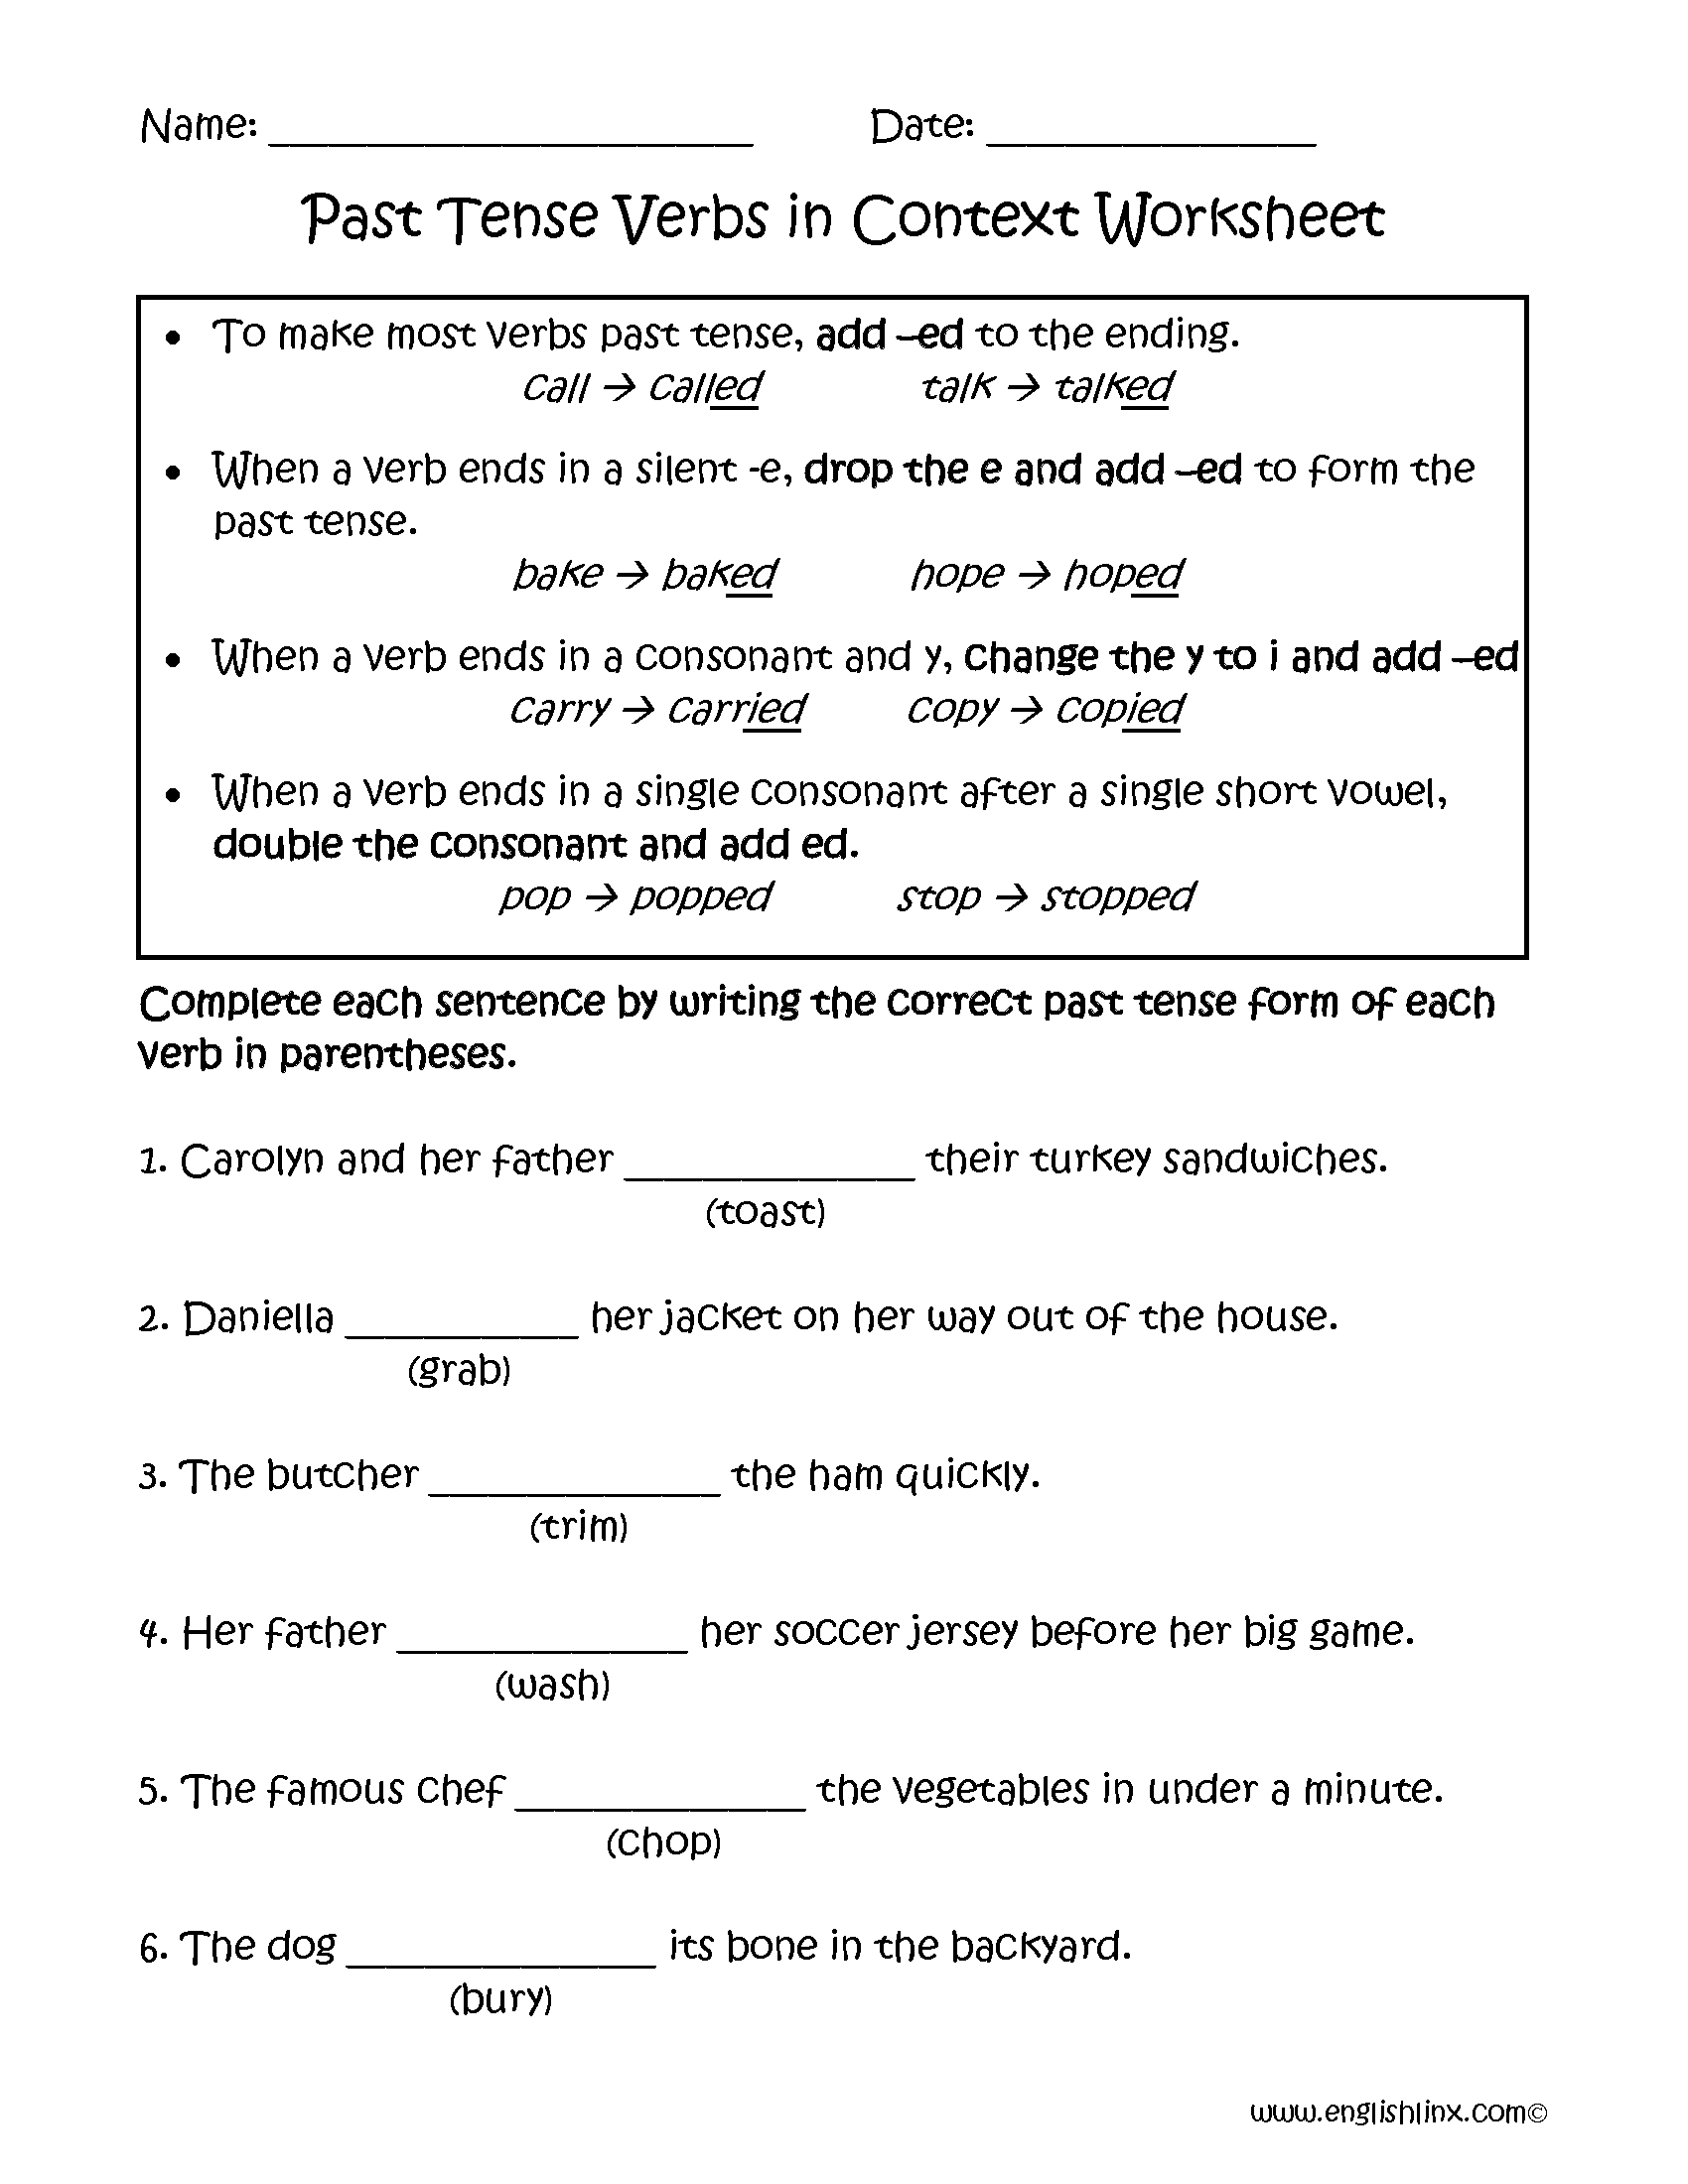 Verbs Worksheets | Verb Tenses Worksheets - Free Printable Past Tense Verbs Worksheets